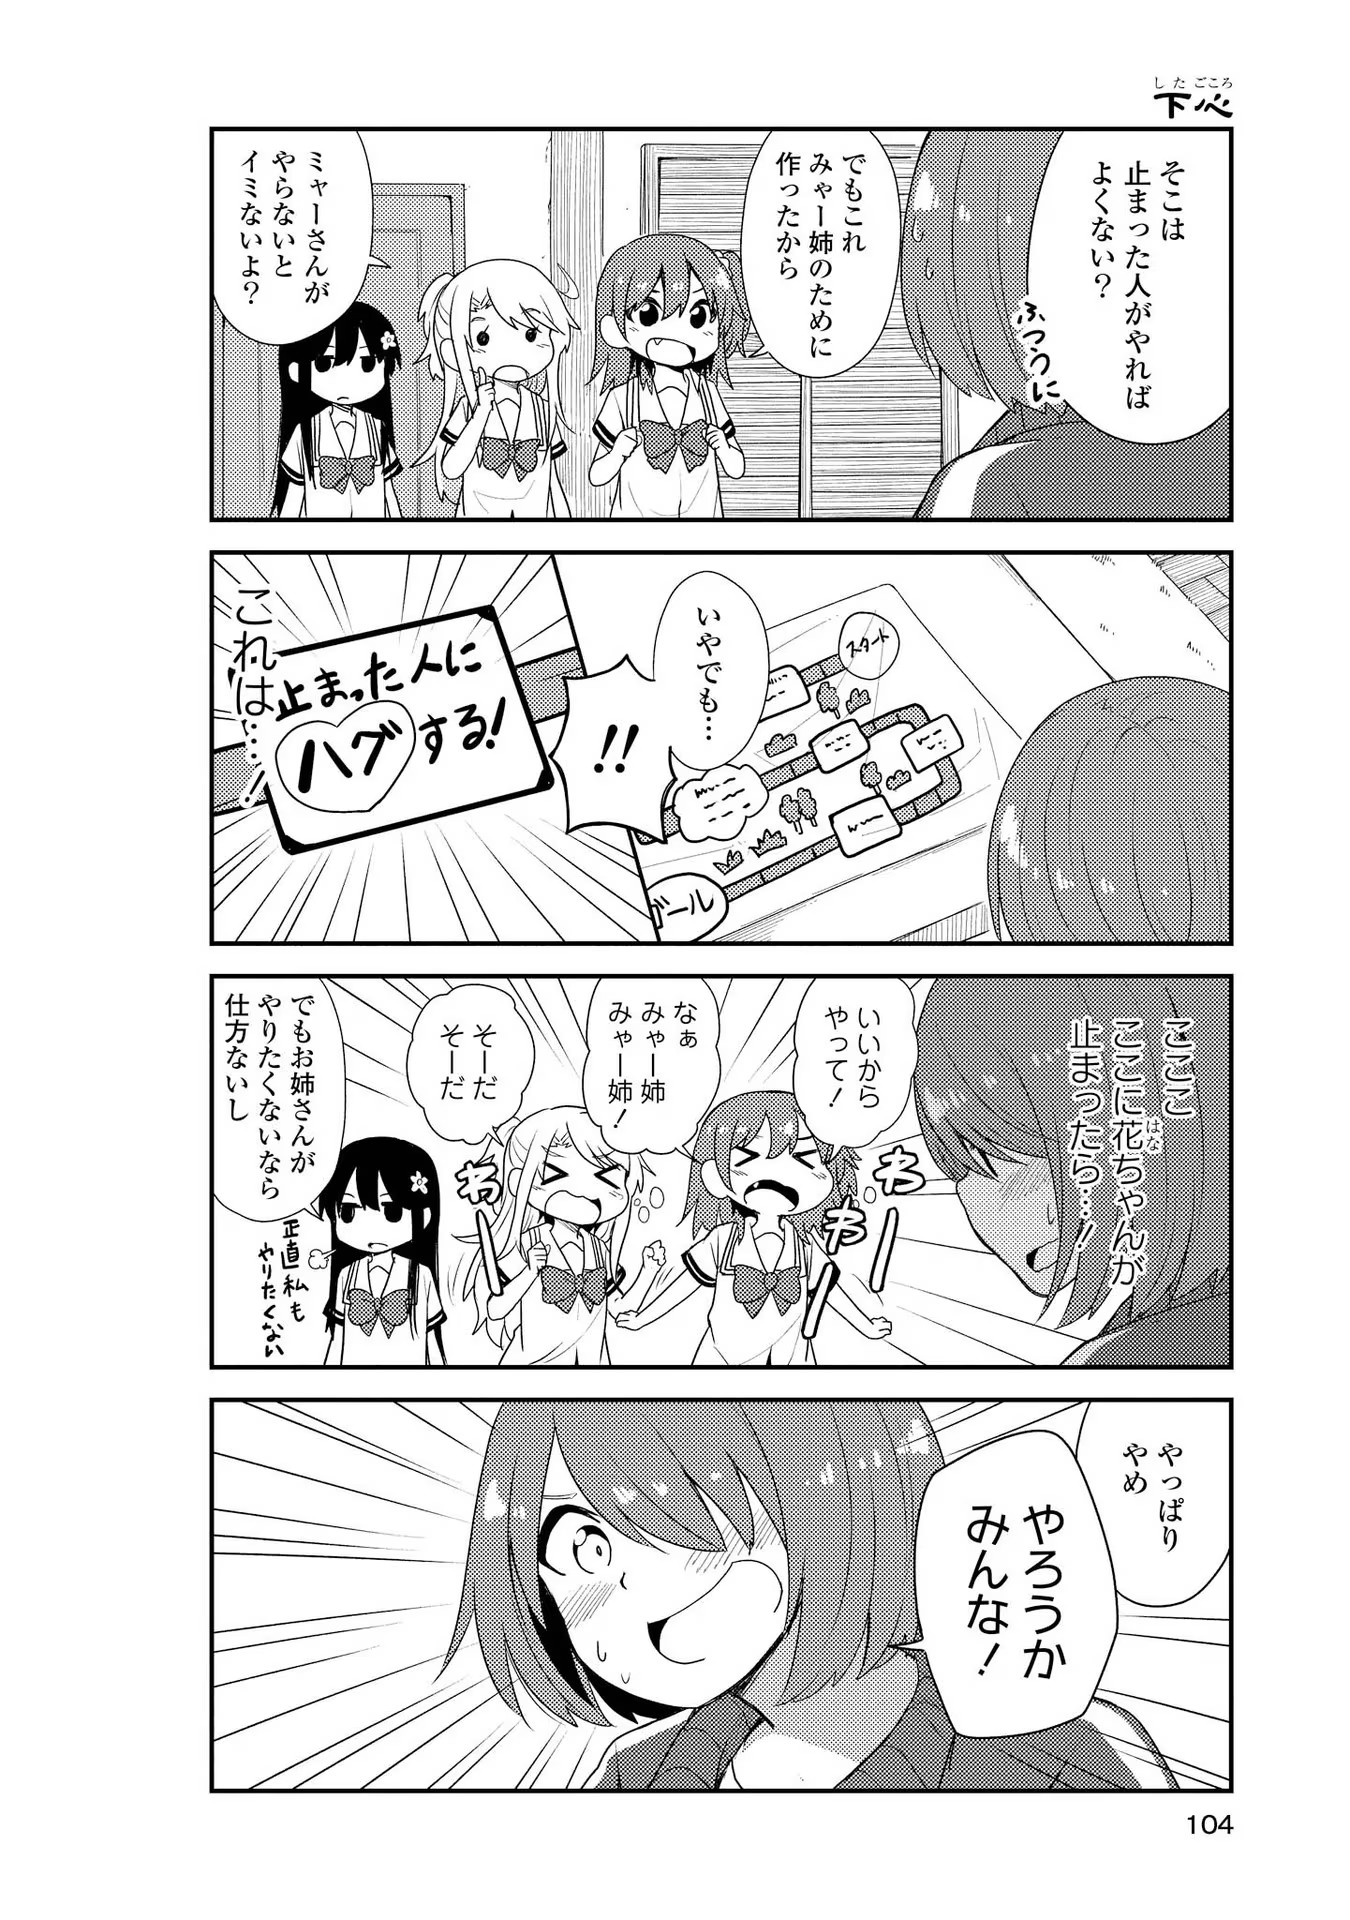 Watashi ni Tenshi ga Maiorita! - Chapter 7 - Page 4